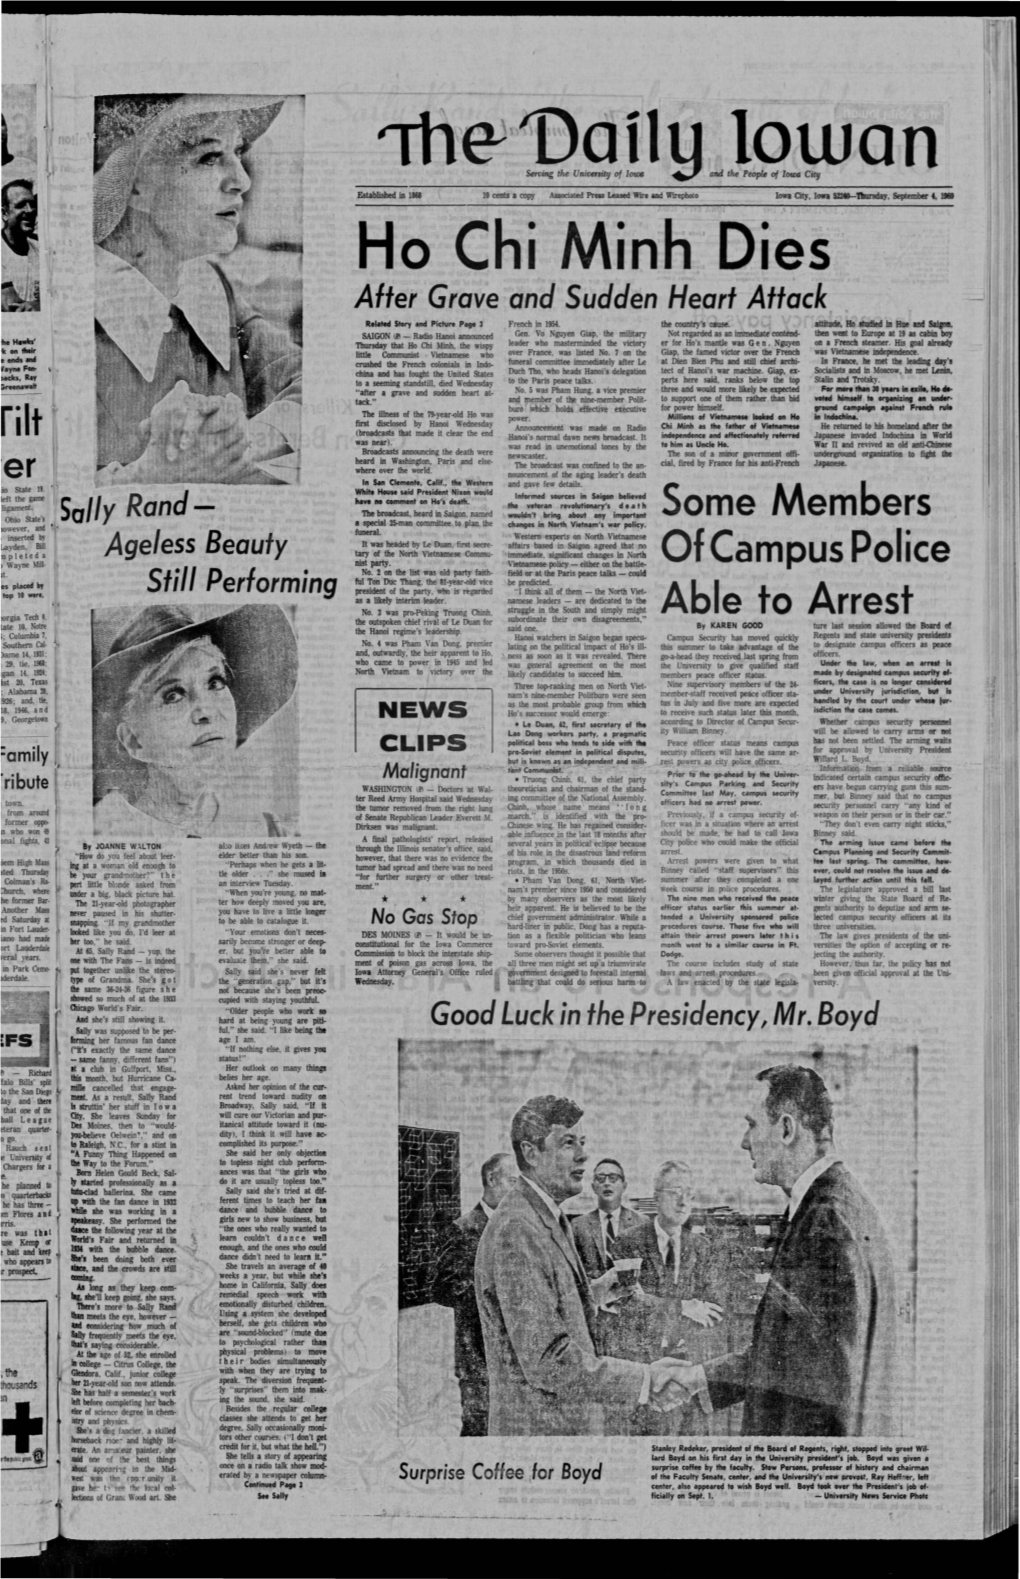 Daily Iowan (Iowa City, Iowa), 1969-09-04